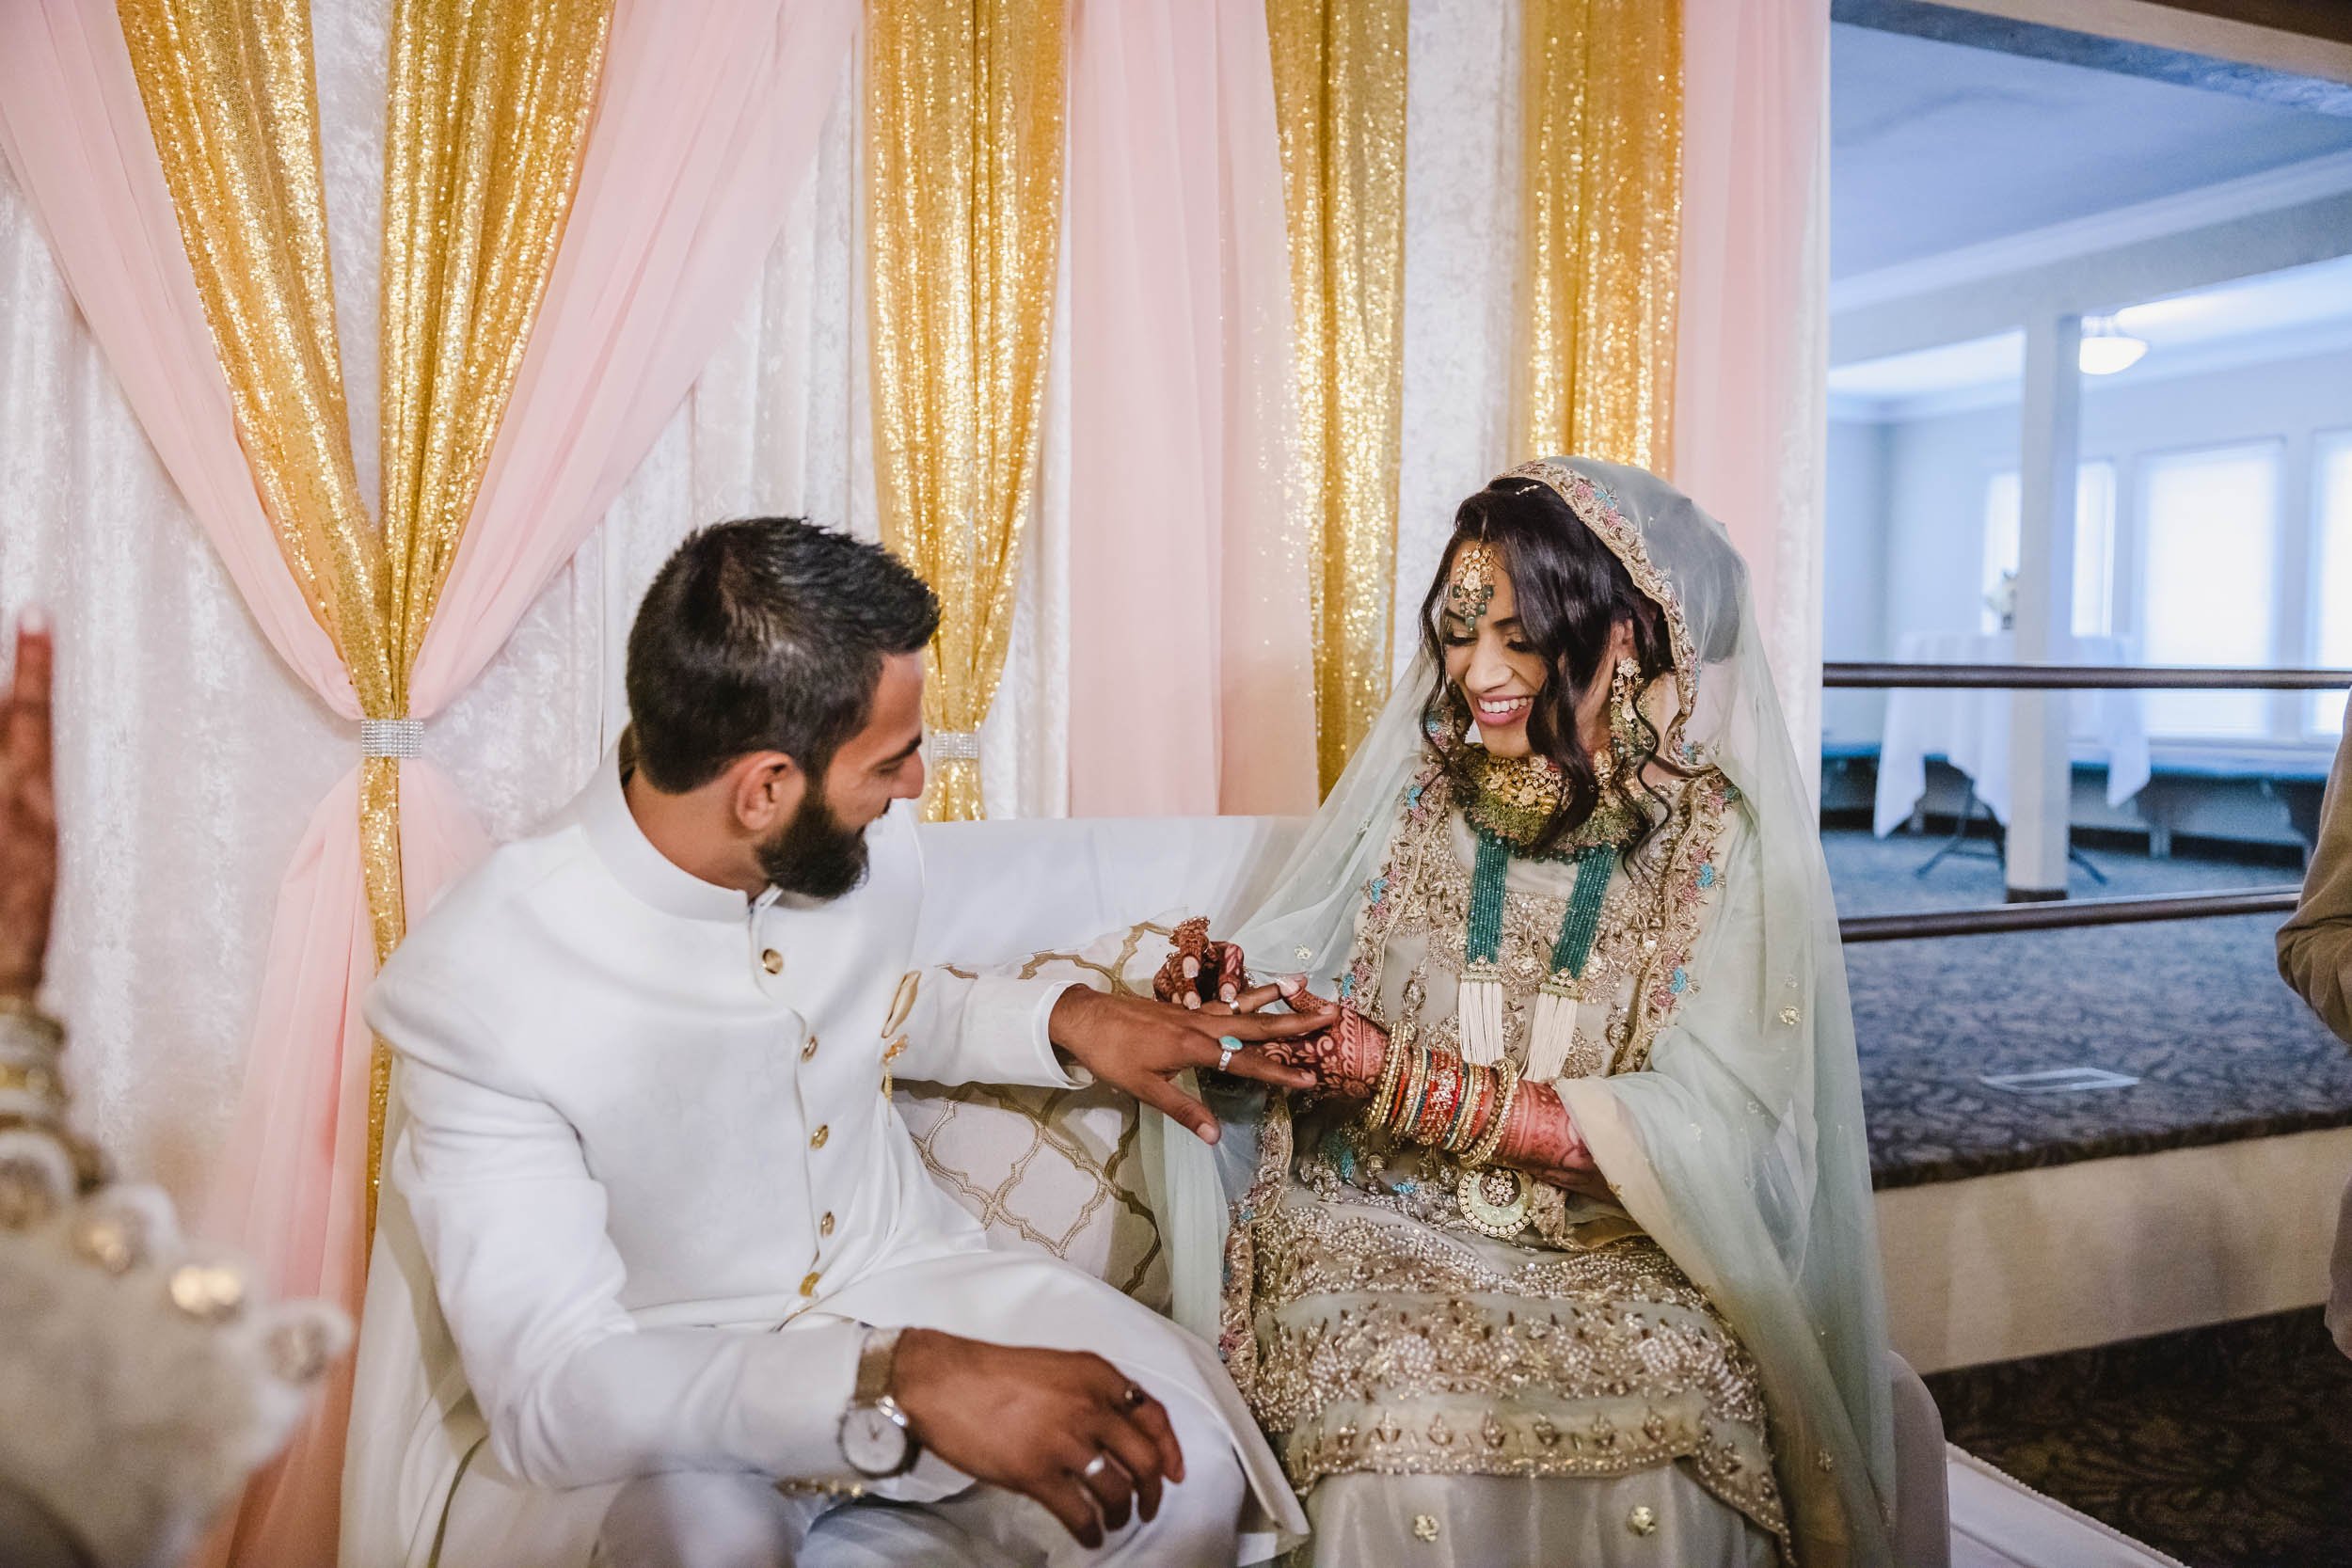 Muslim bride and groom exchange rings